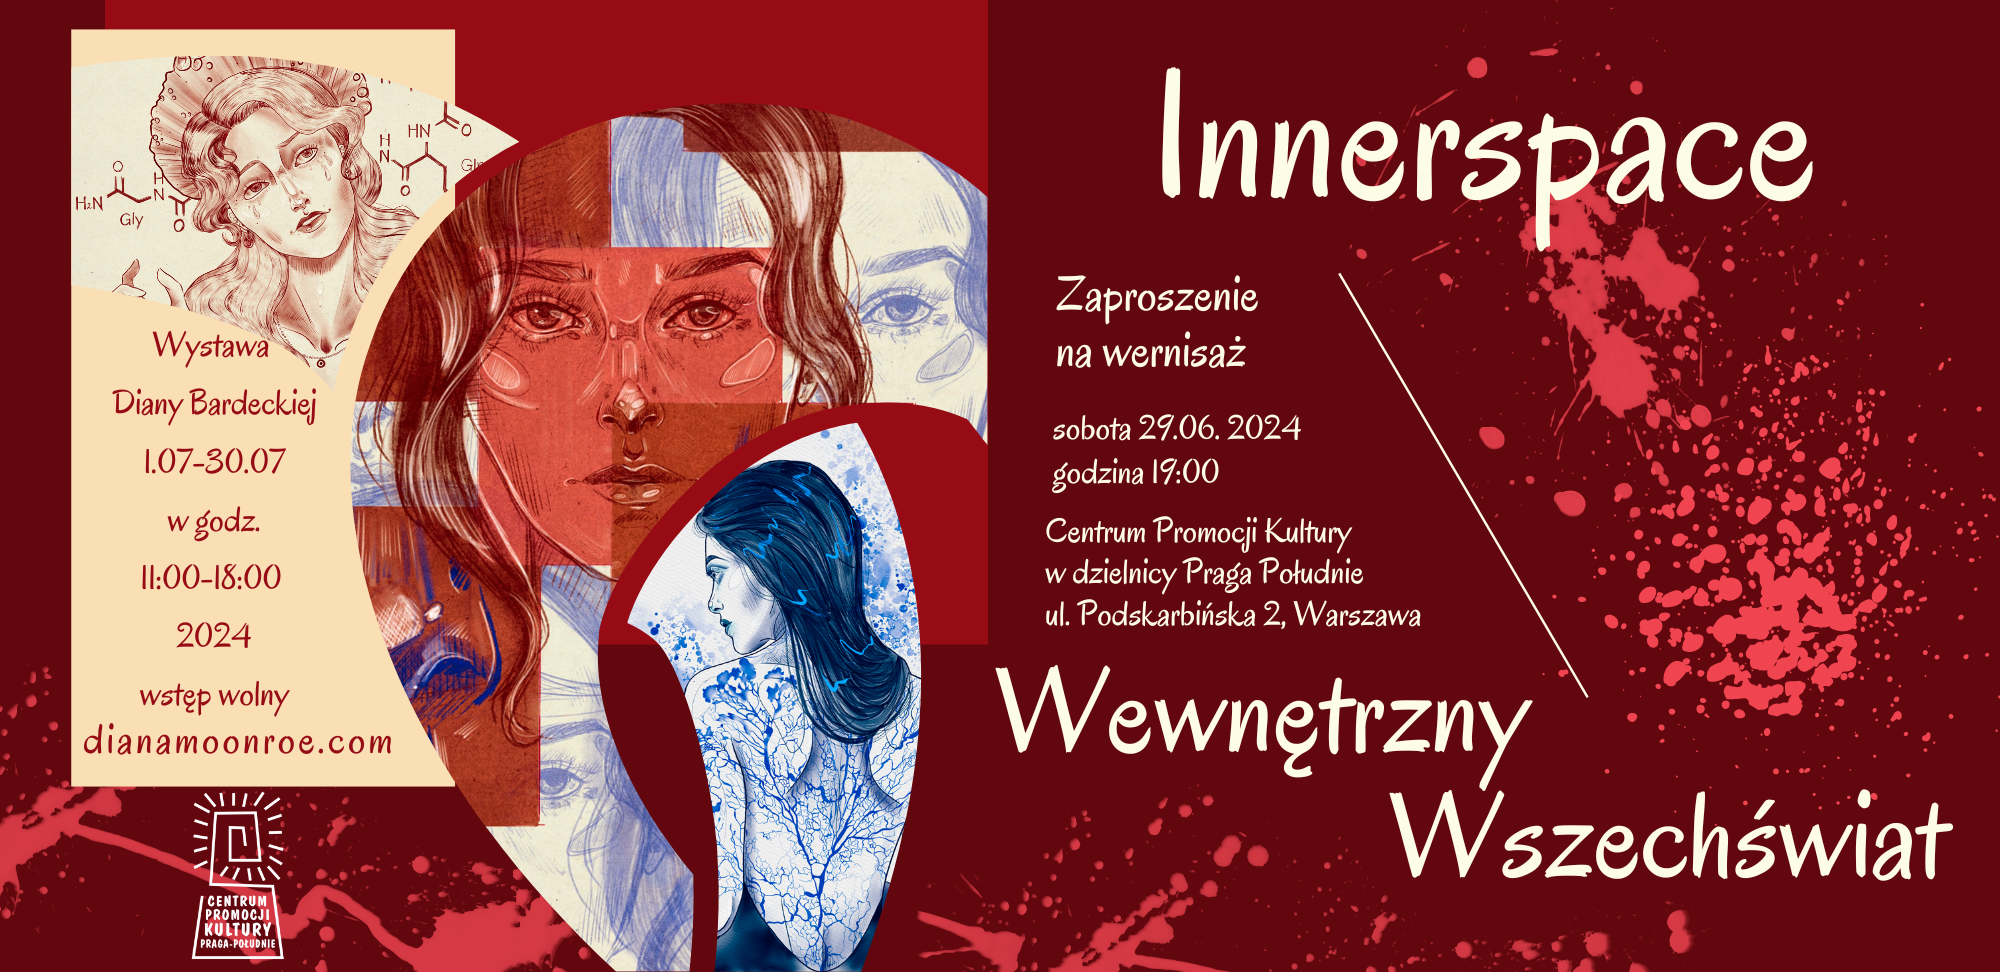 Diana Bardecka: Wystawa "Innerspace - Wewnętrzny Wszechświat" w Warszawie